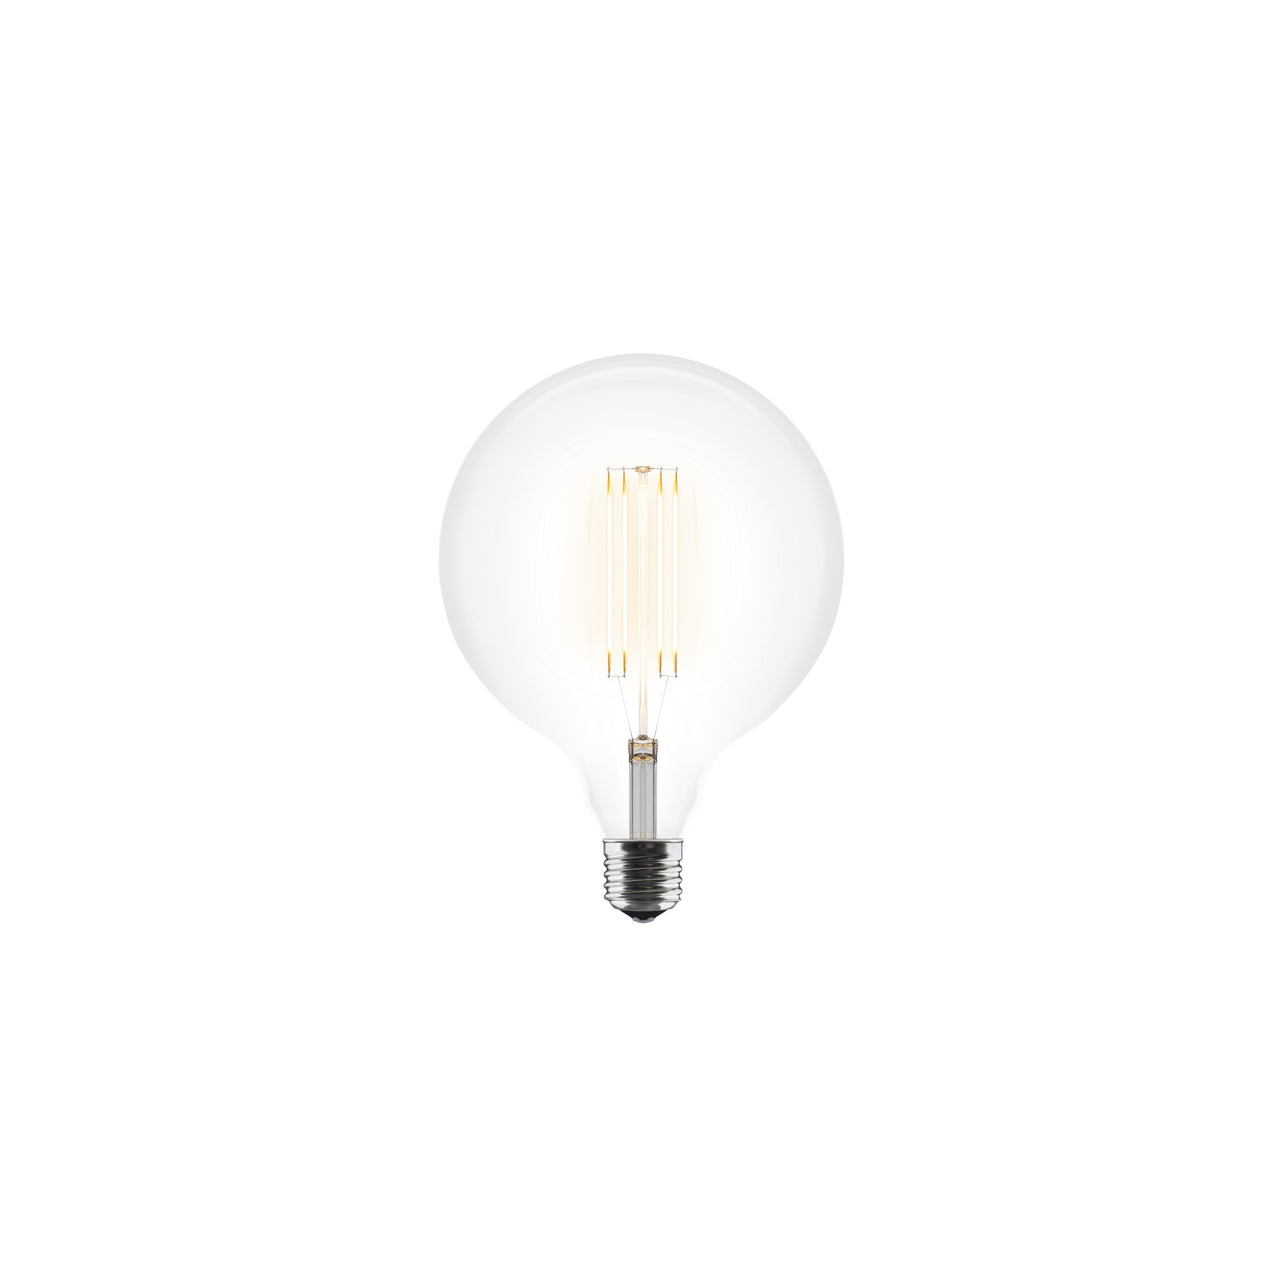 Idea LED Bulb Series: 3 W